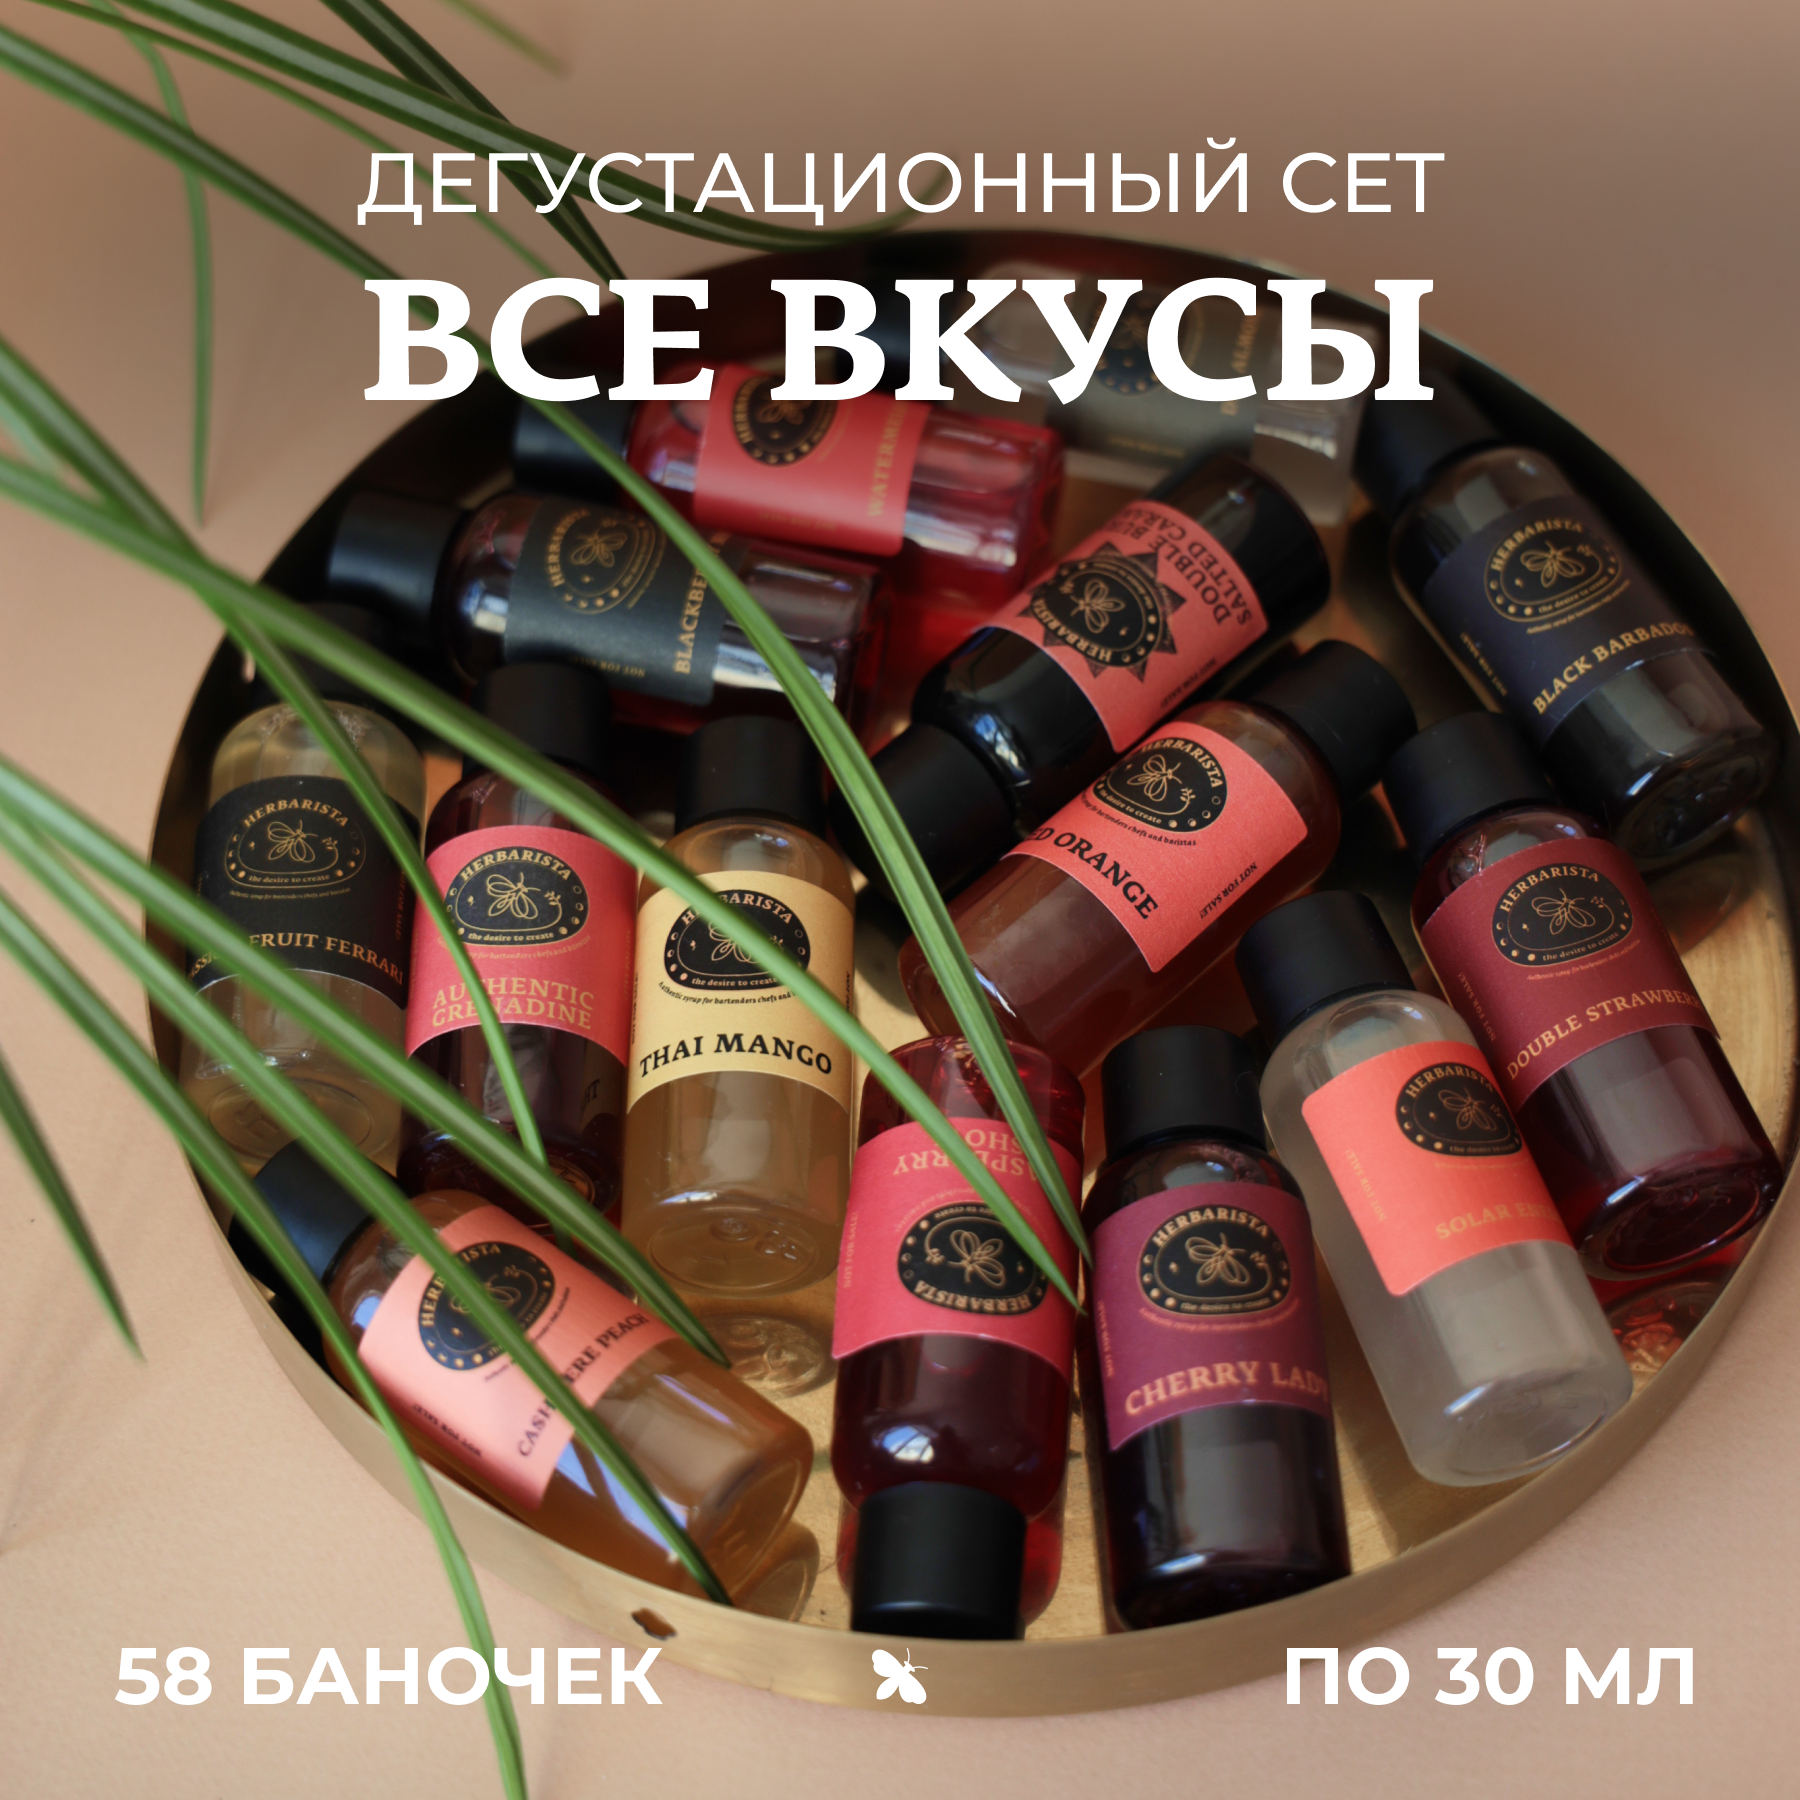 Набор сиропов Herbarista, Дегустационный сет "Все вкусы" (58 шт. / 30 мл)